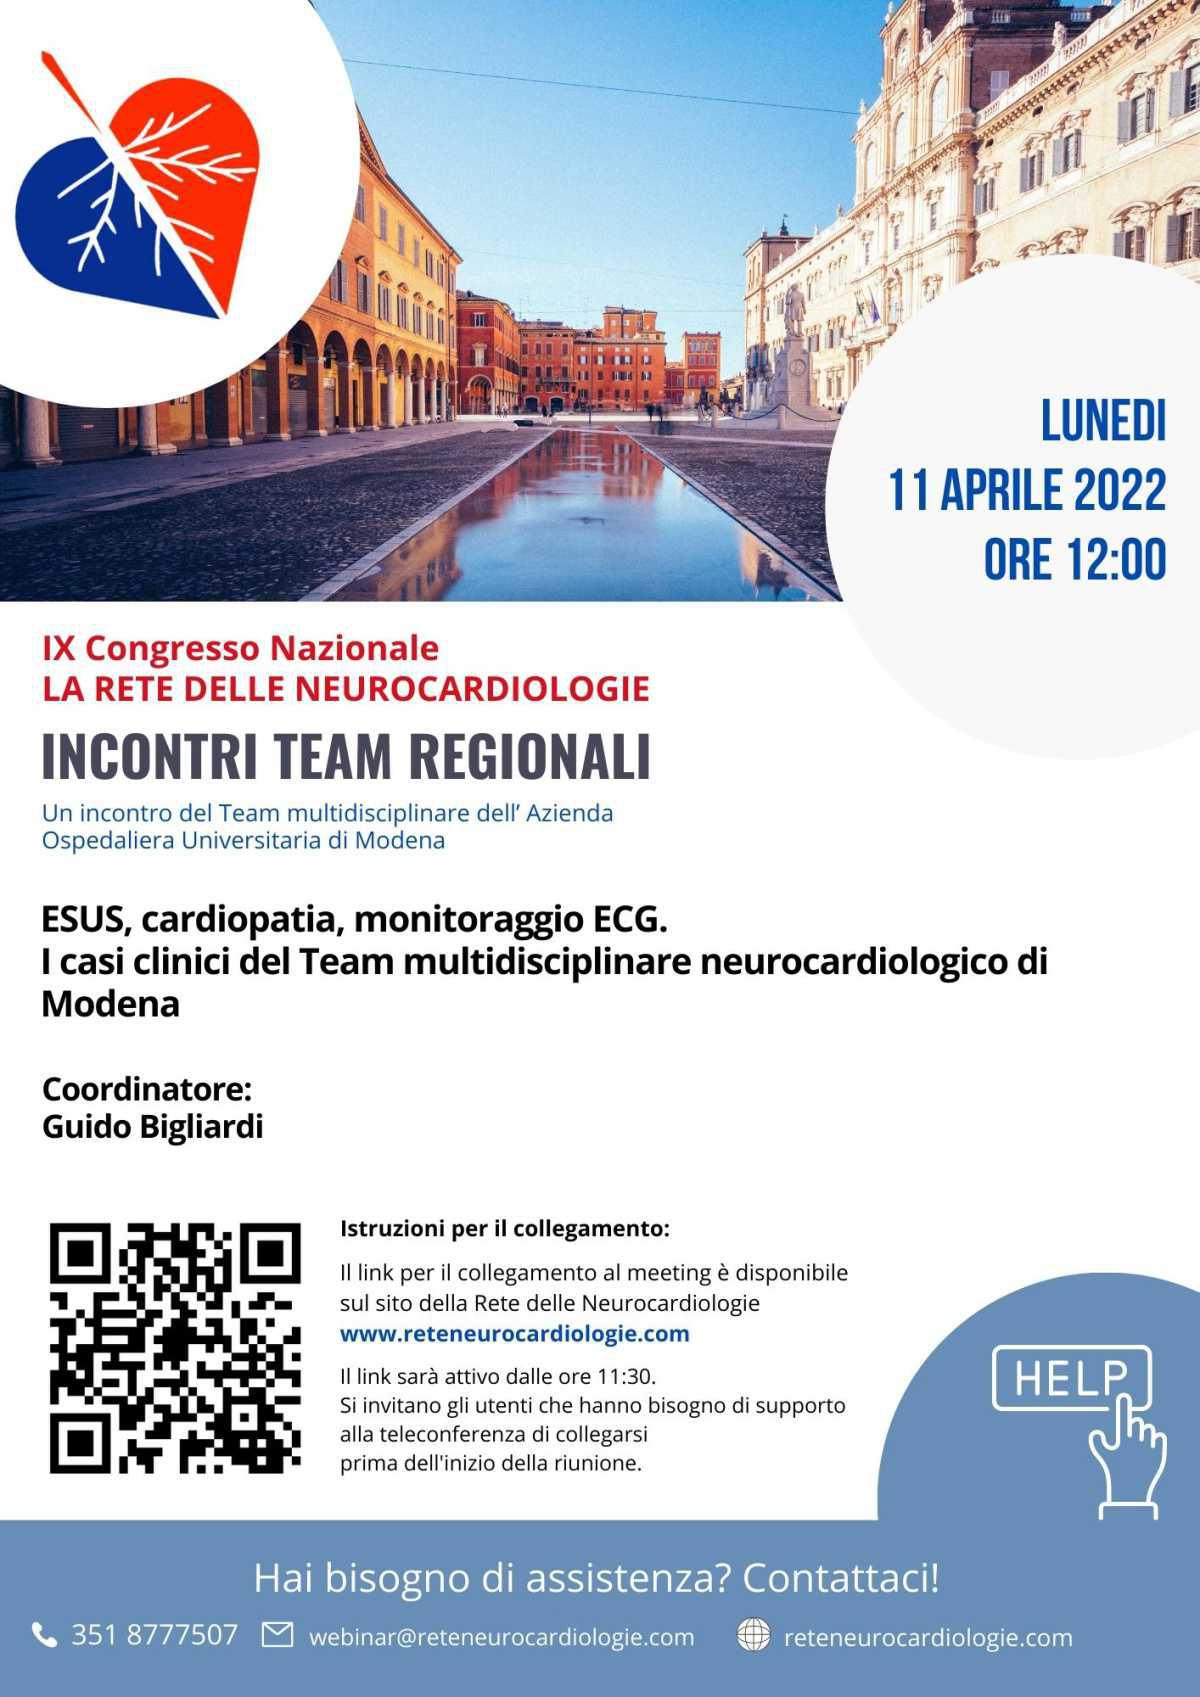 ESUS, cardiopatia, monitoraggio ECG. I casi clinici del Team multidisciplinare neurocardiologico di Modena